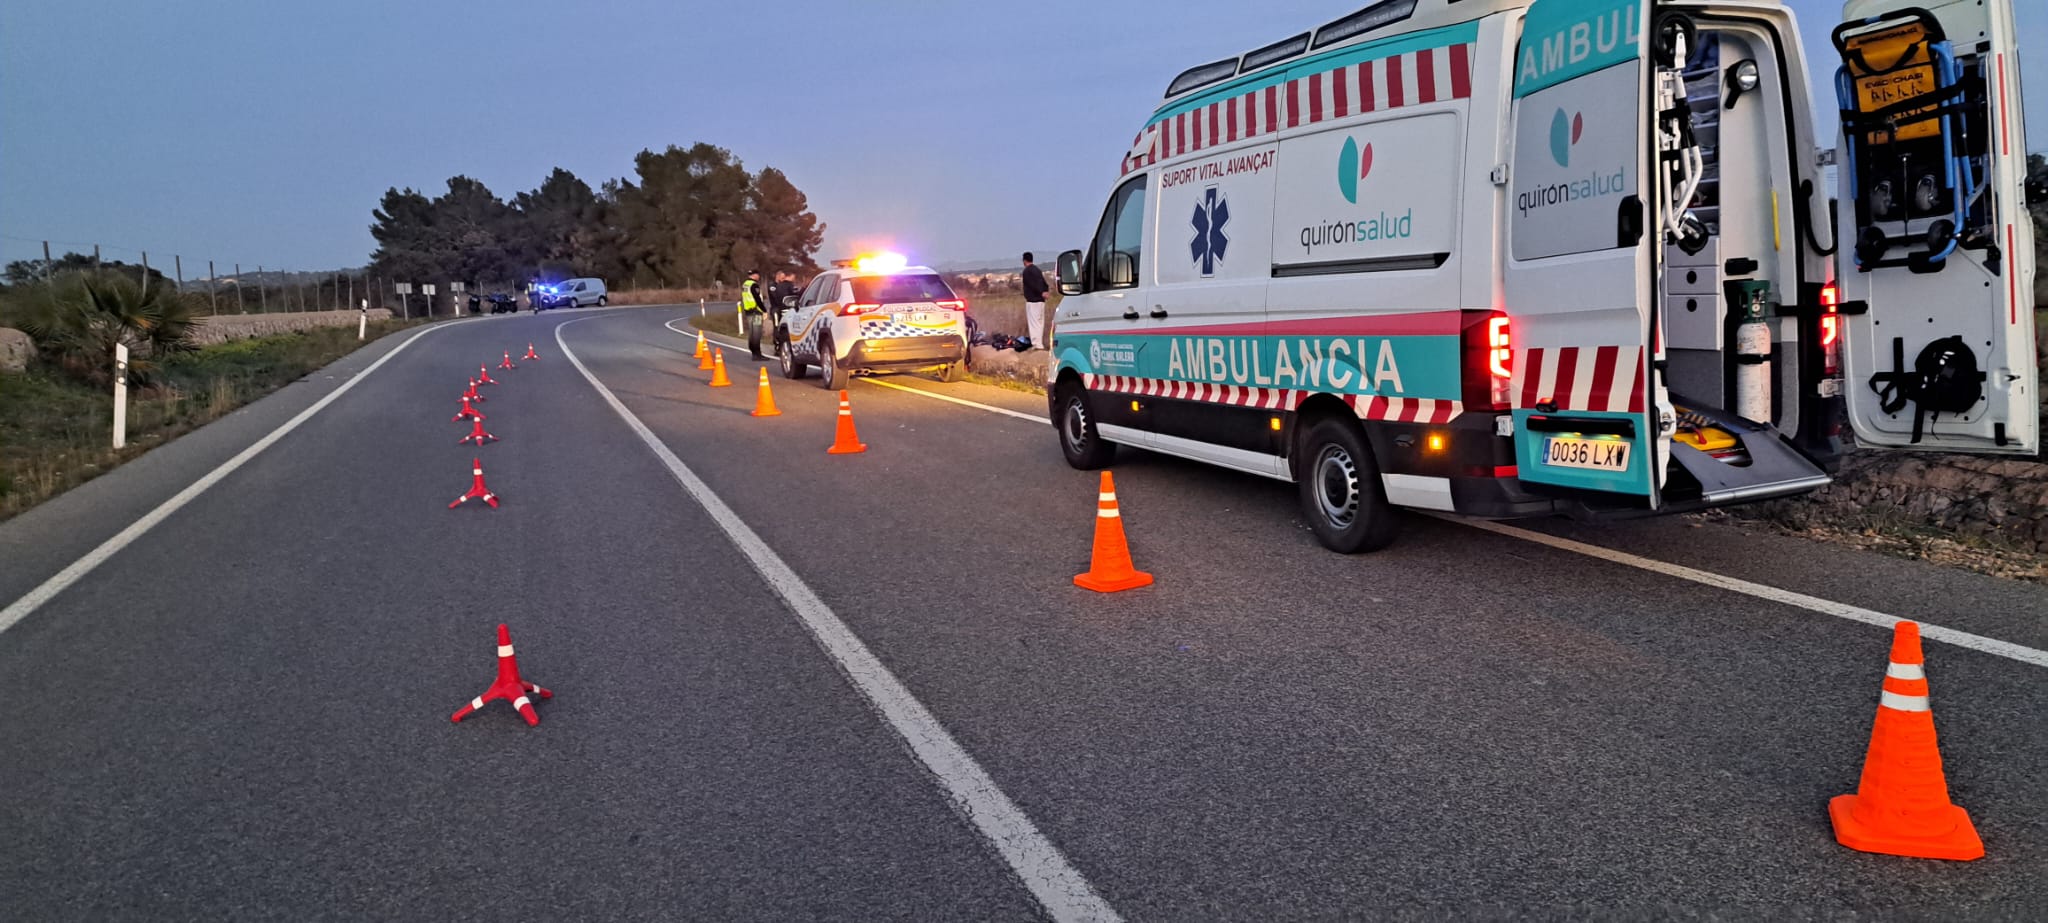 Hospitalitzat un jove motorista accidentat a la carretera de Porreres a Llucmajor